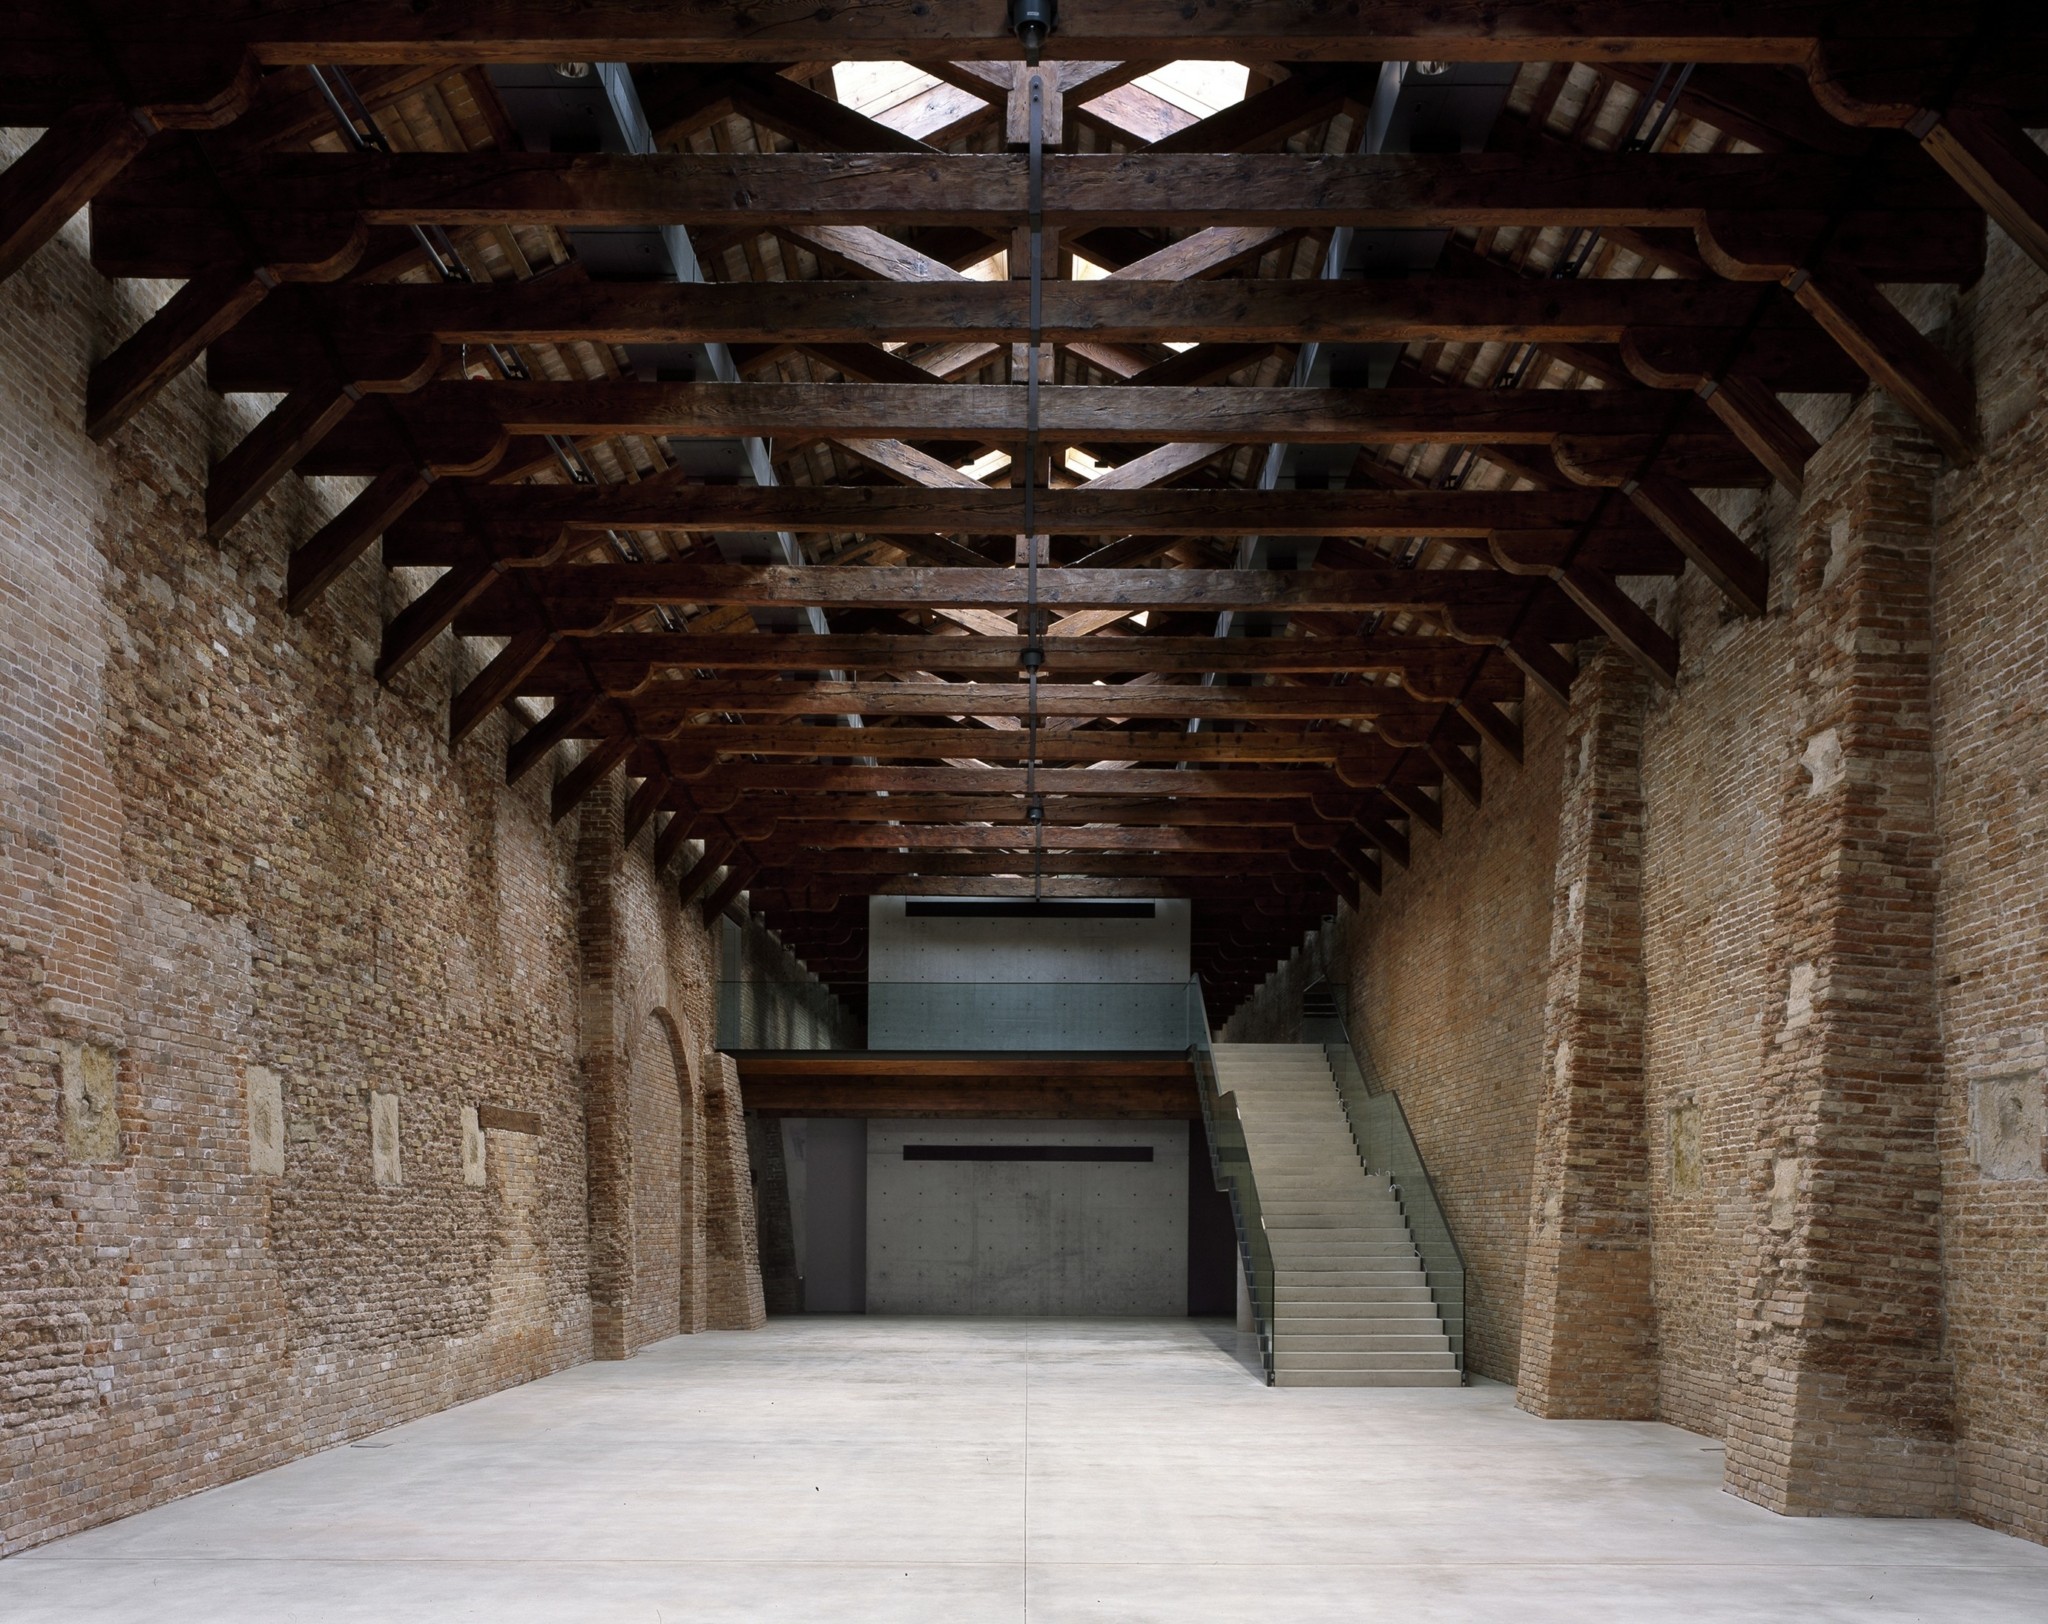 Ο μεγιστάνας Φρανσουά Πινό μετέτρεψε δύο εμβληματικά κτίρια της Βενετίας σε Μουσεία της συλλογής του